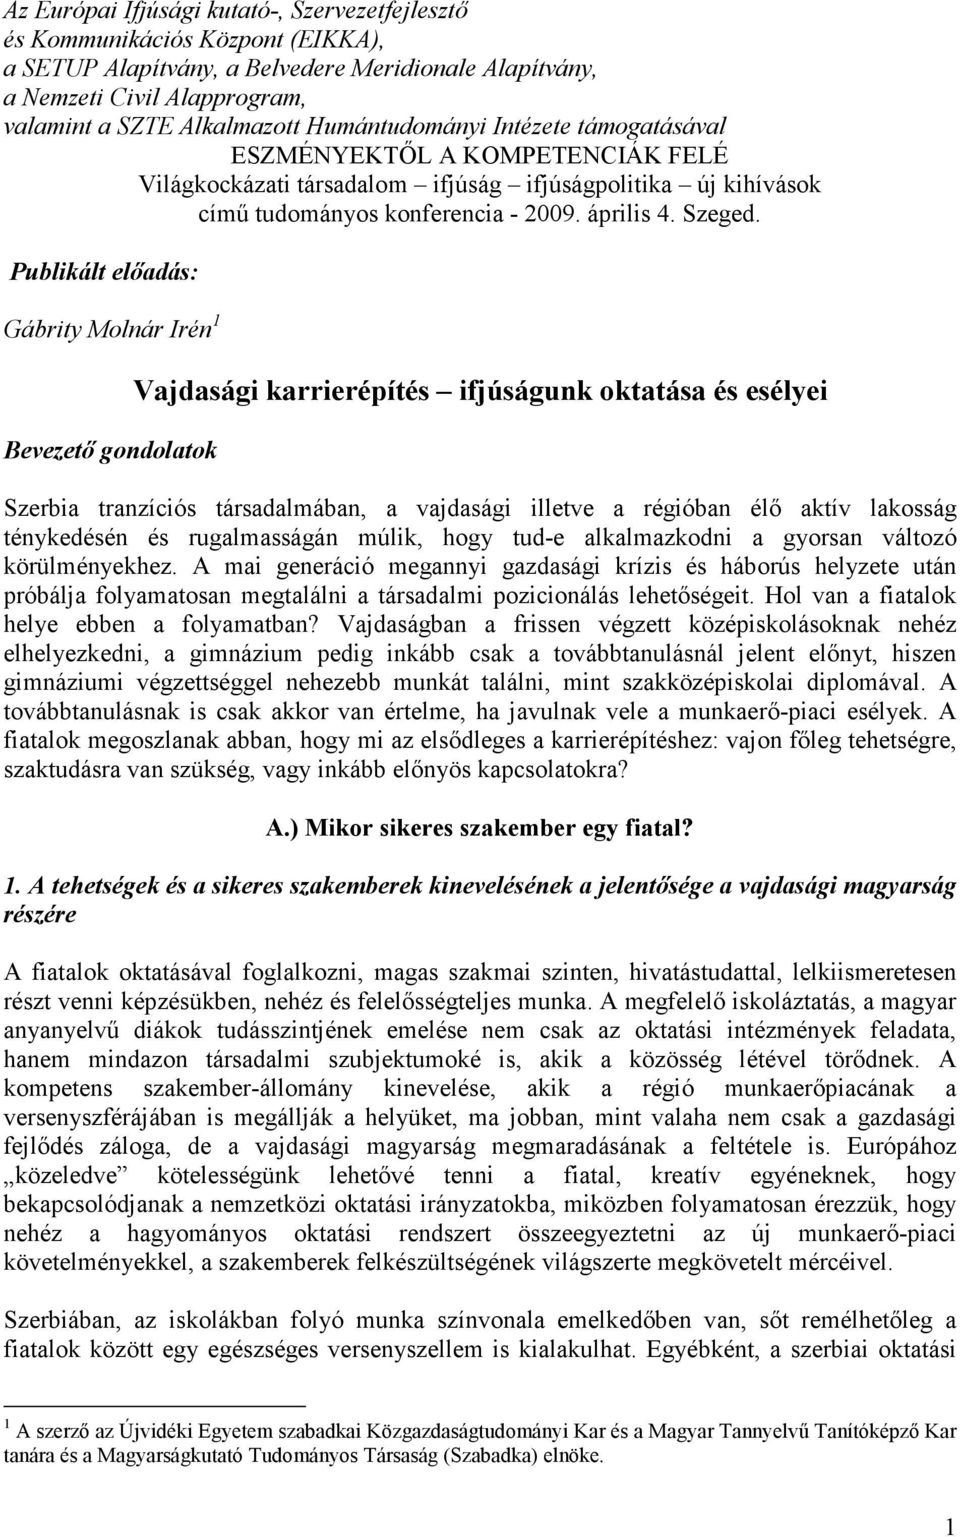 Publikált elıadás: Gábrity Molnár Irén 1 Bevezetı gondolatok Vajdasági karrierépítés ifjúságunk oktatása és esélyei Szerbia tranzíciós társadalmában, a vajdasági illetve a régióban élı aktív lakosság